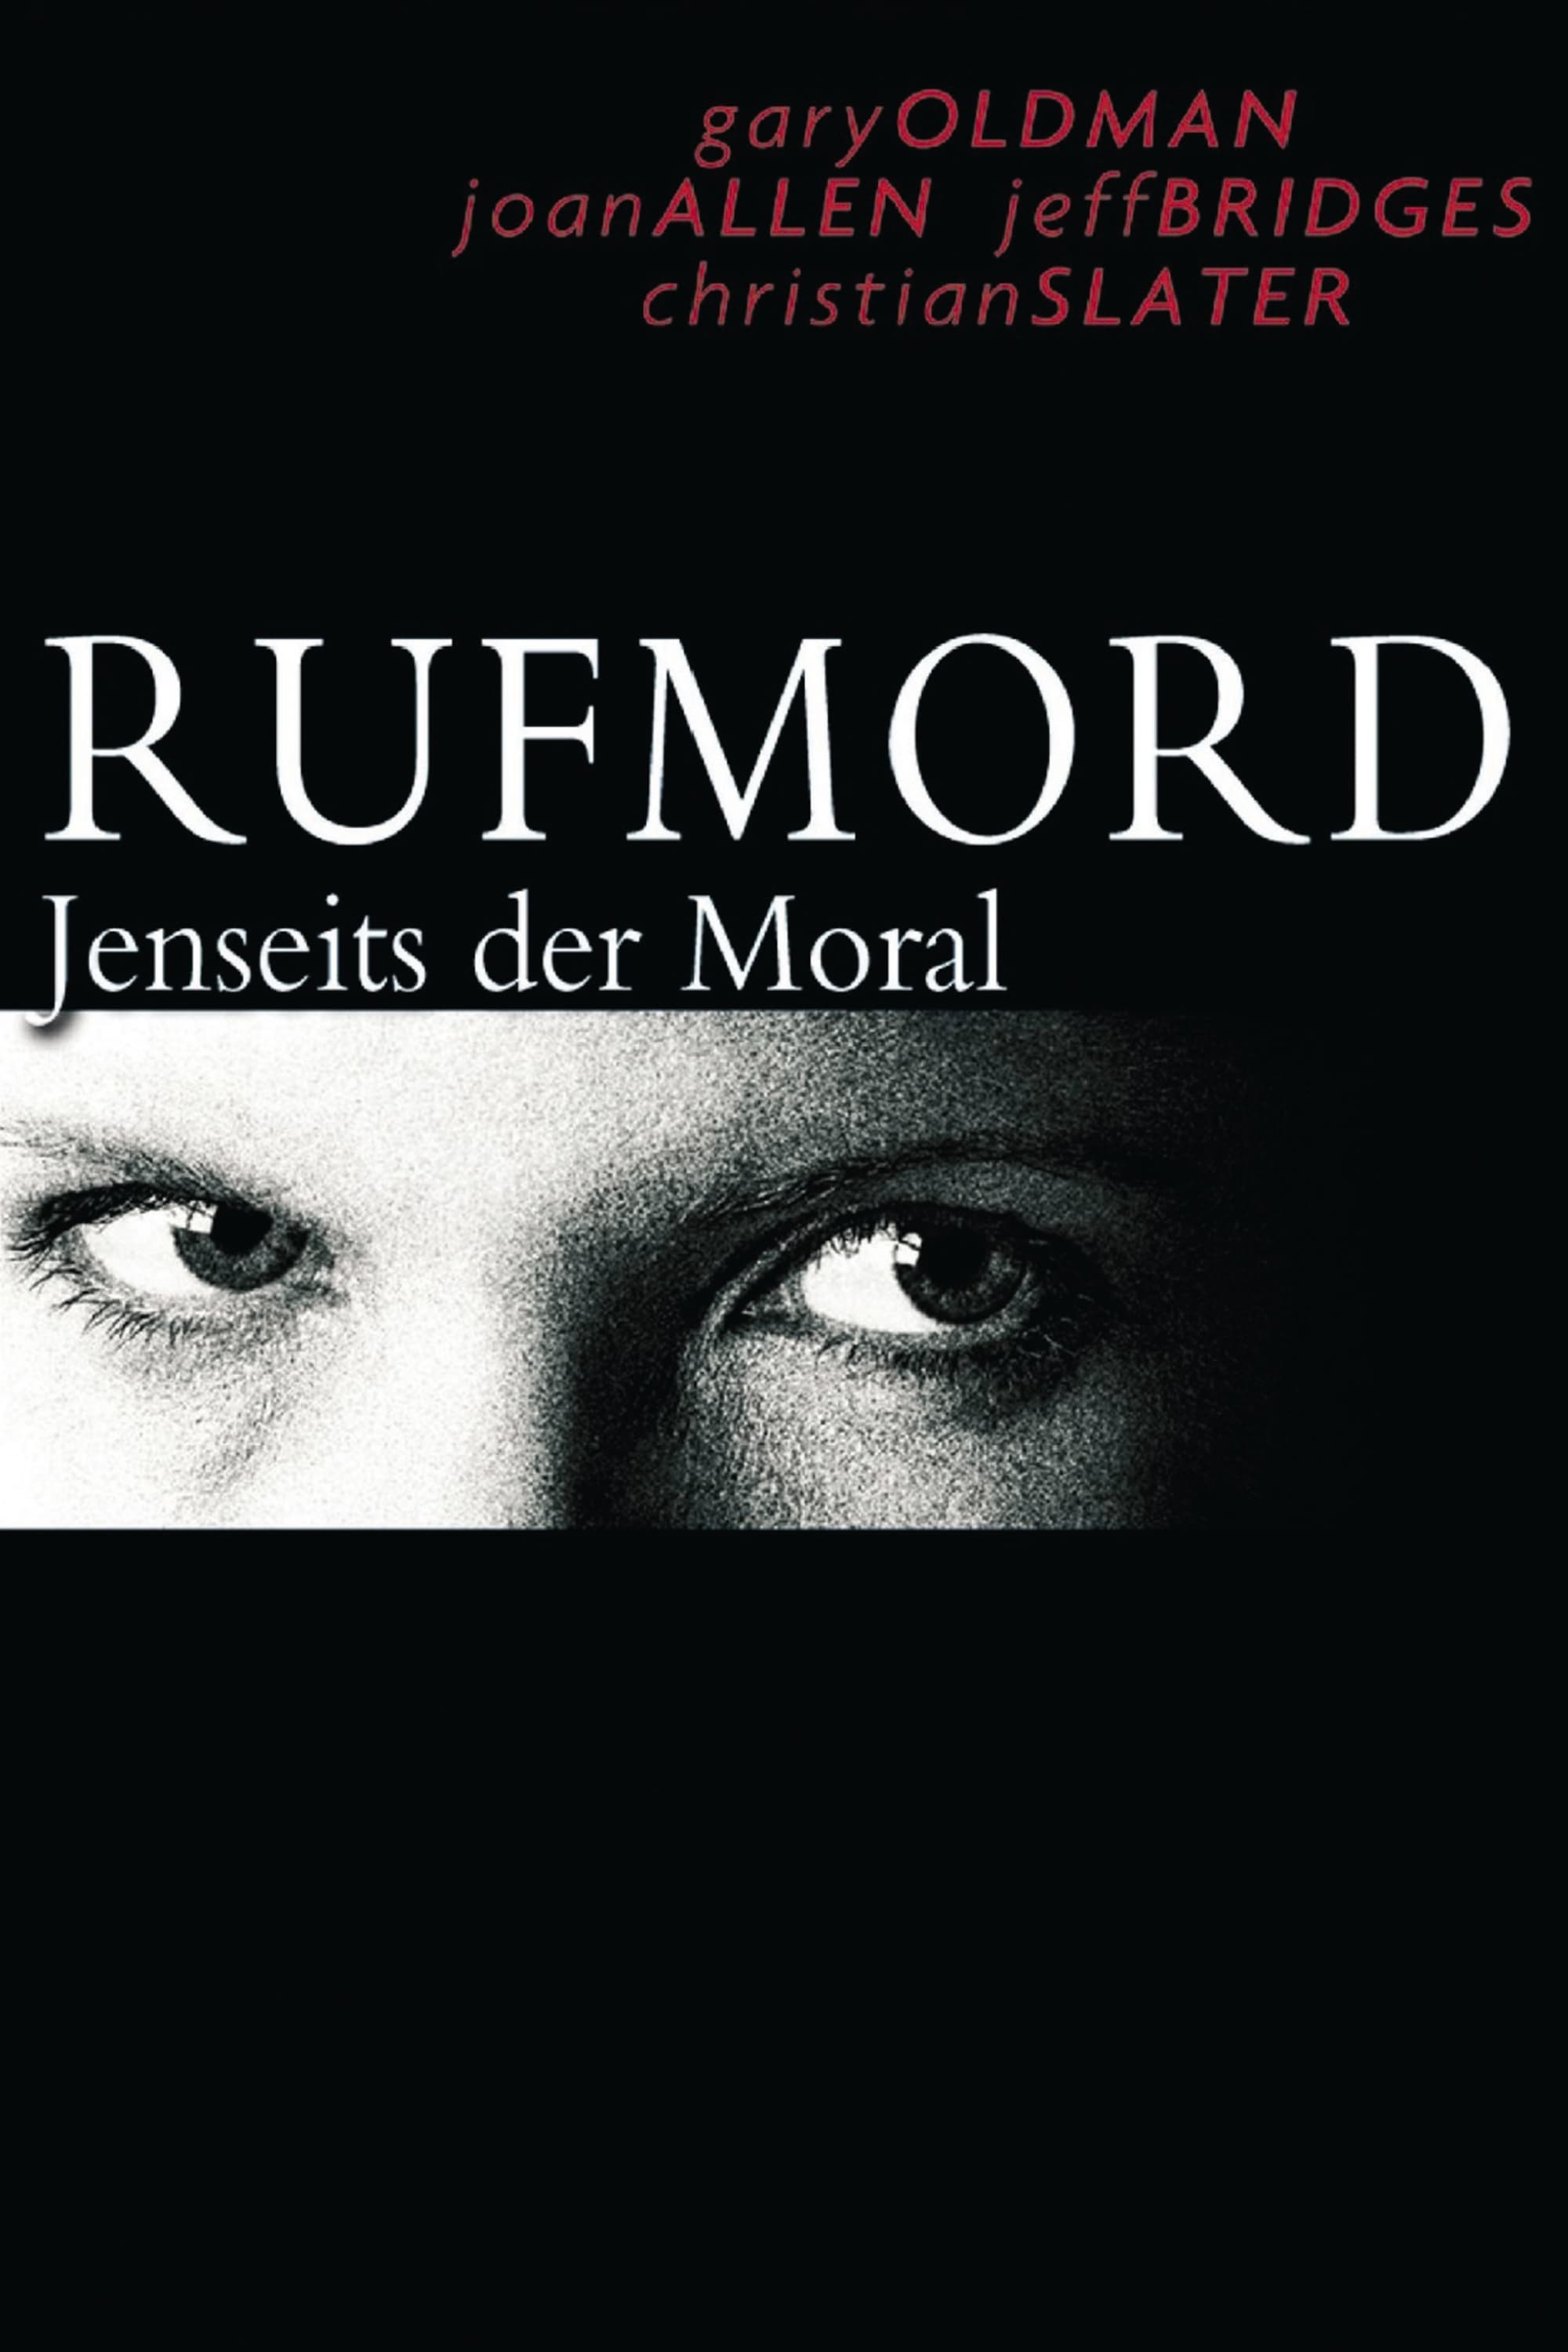 Plakat von "Rufmord - Jenseits der Moral"